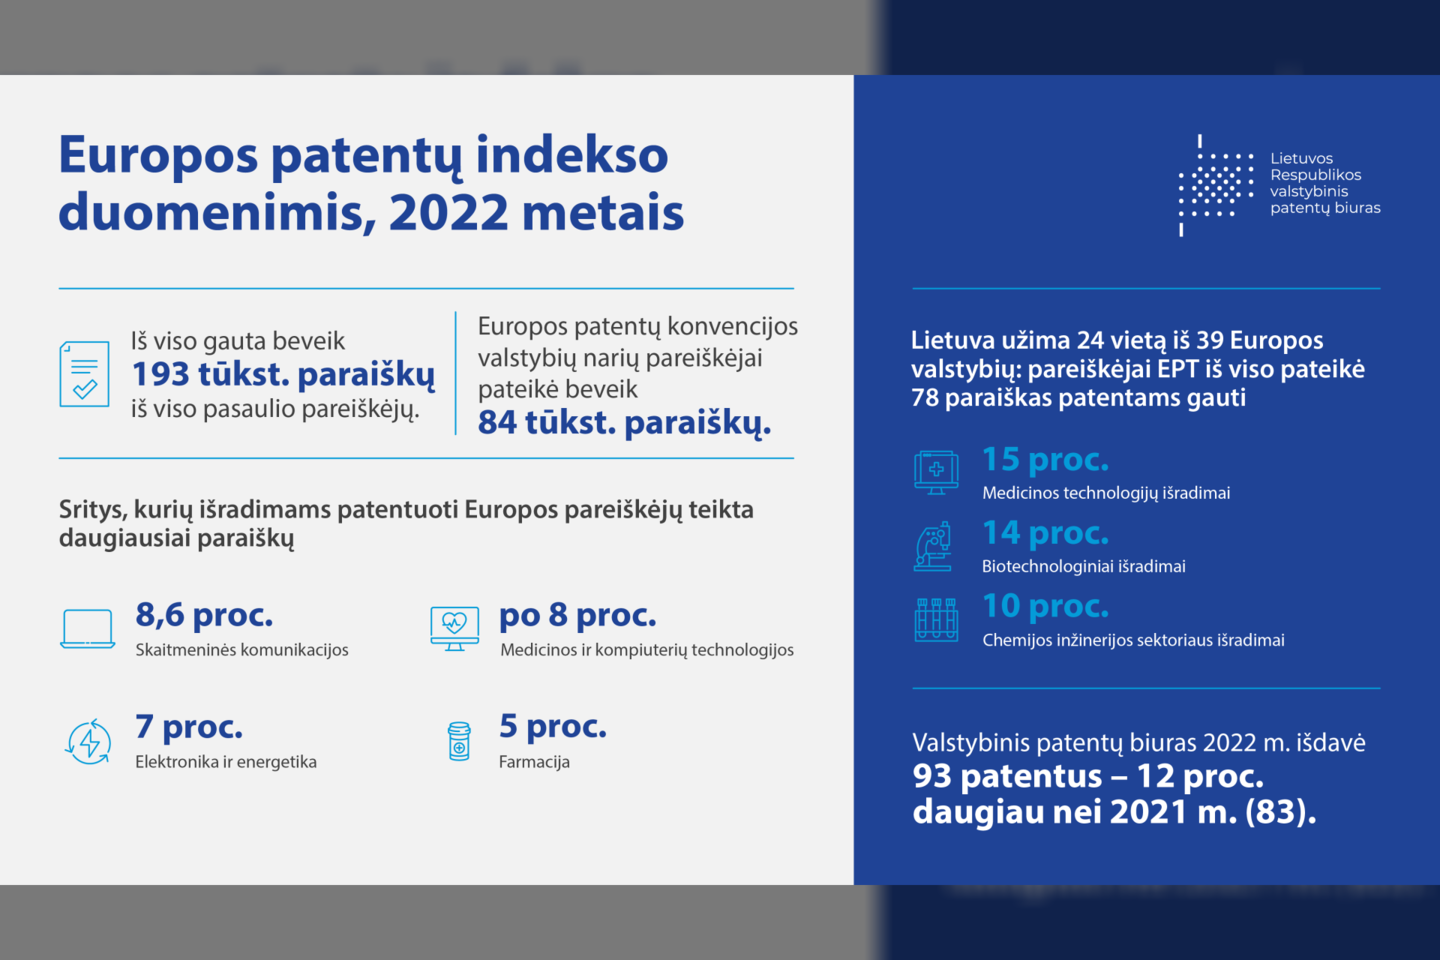 Per metus Lietuvos pareiškėjai pateikė 10 proc. daugiau paraiškų dėl naujų išradimų patentavimo, dažniausiai norima patentuoti medicinos technologijų ir biotechnologijų išradimus.<br>Pranešimo spaudai iliustr.